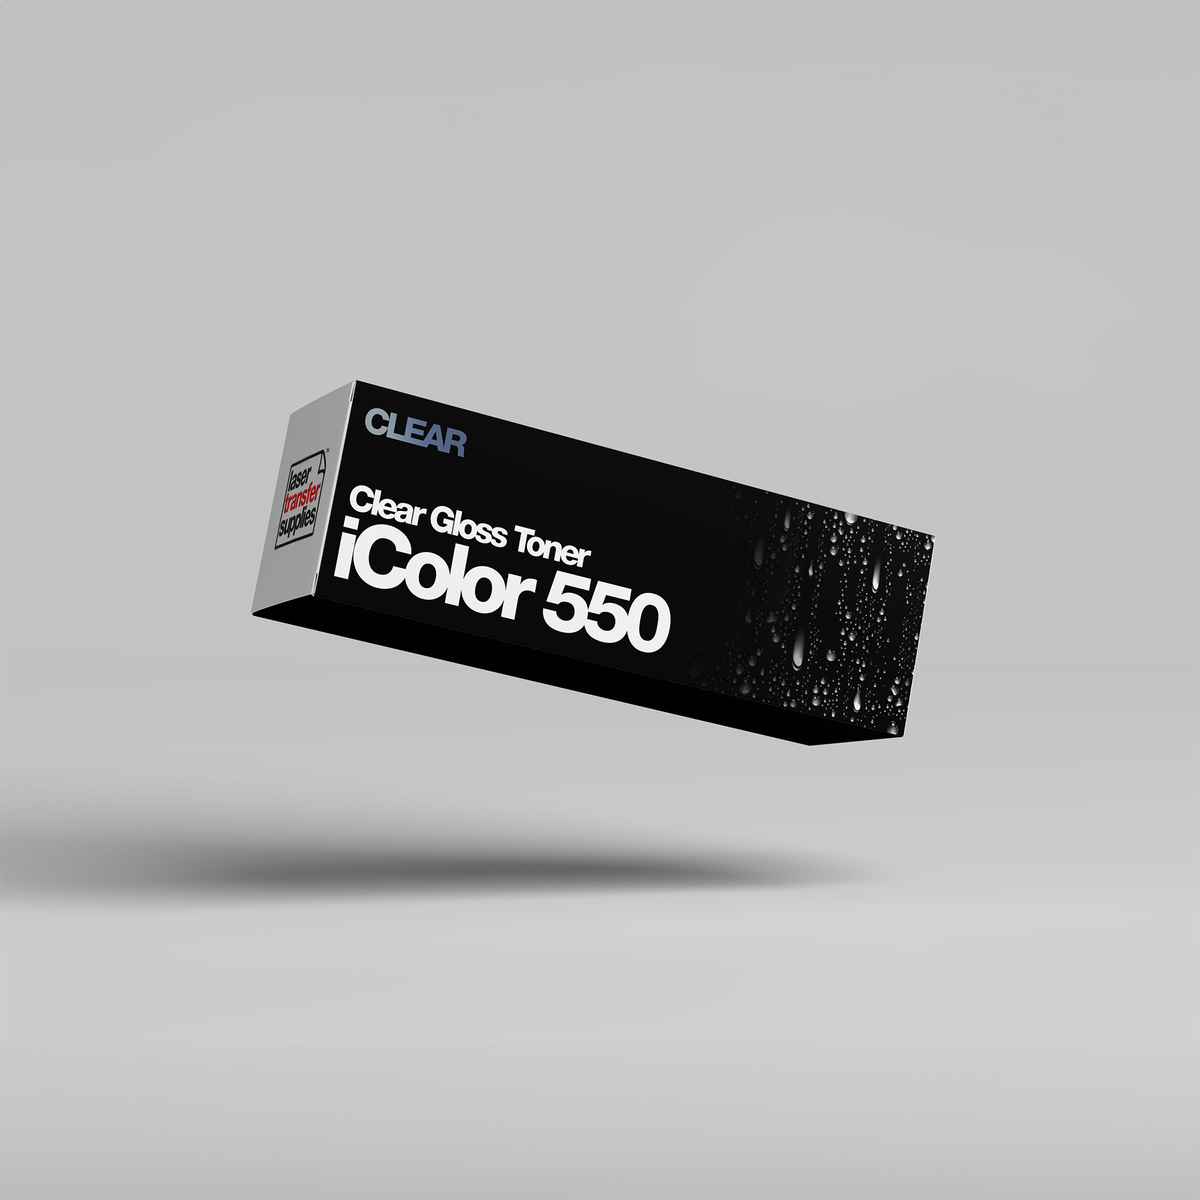 IColor 550 Specialty Toner